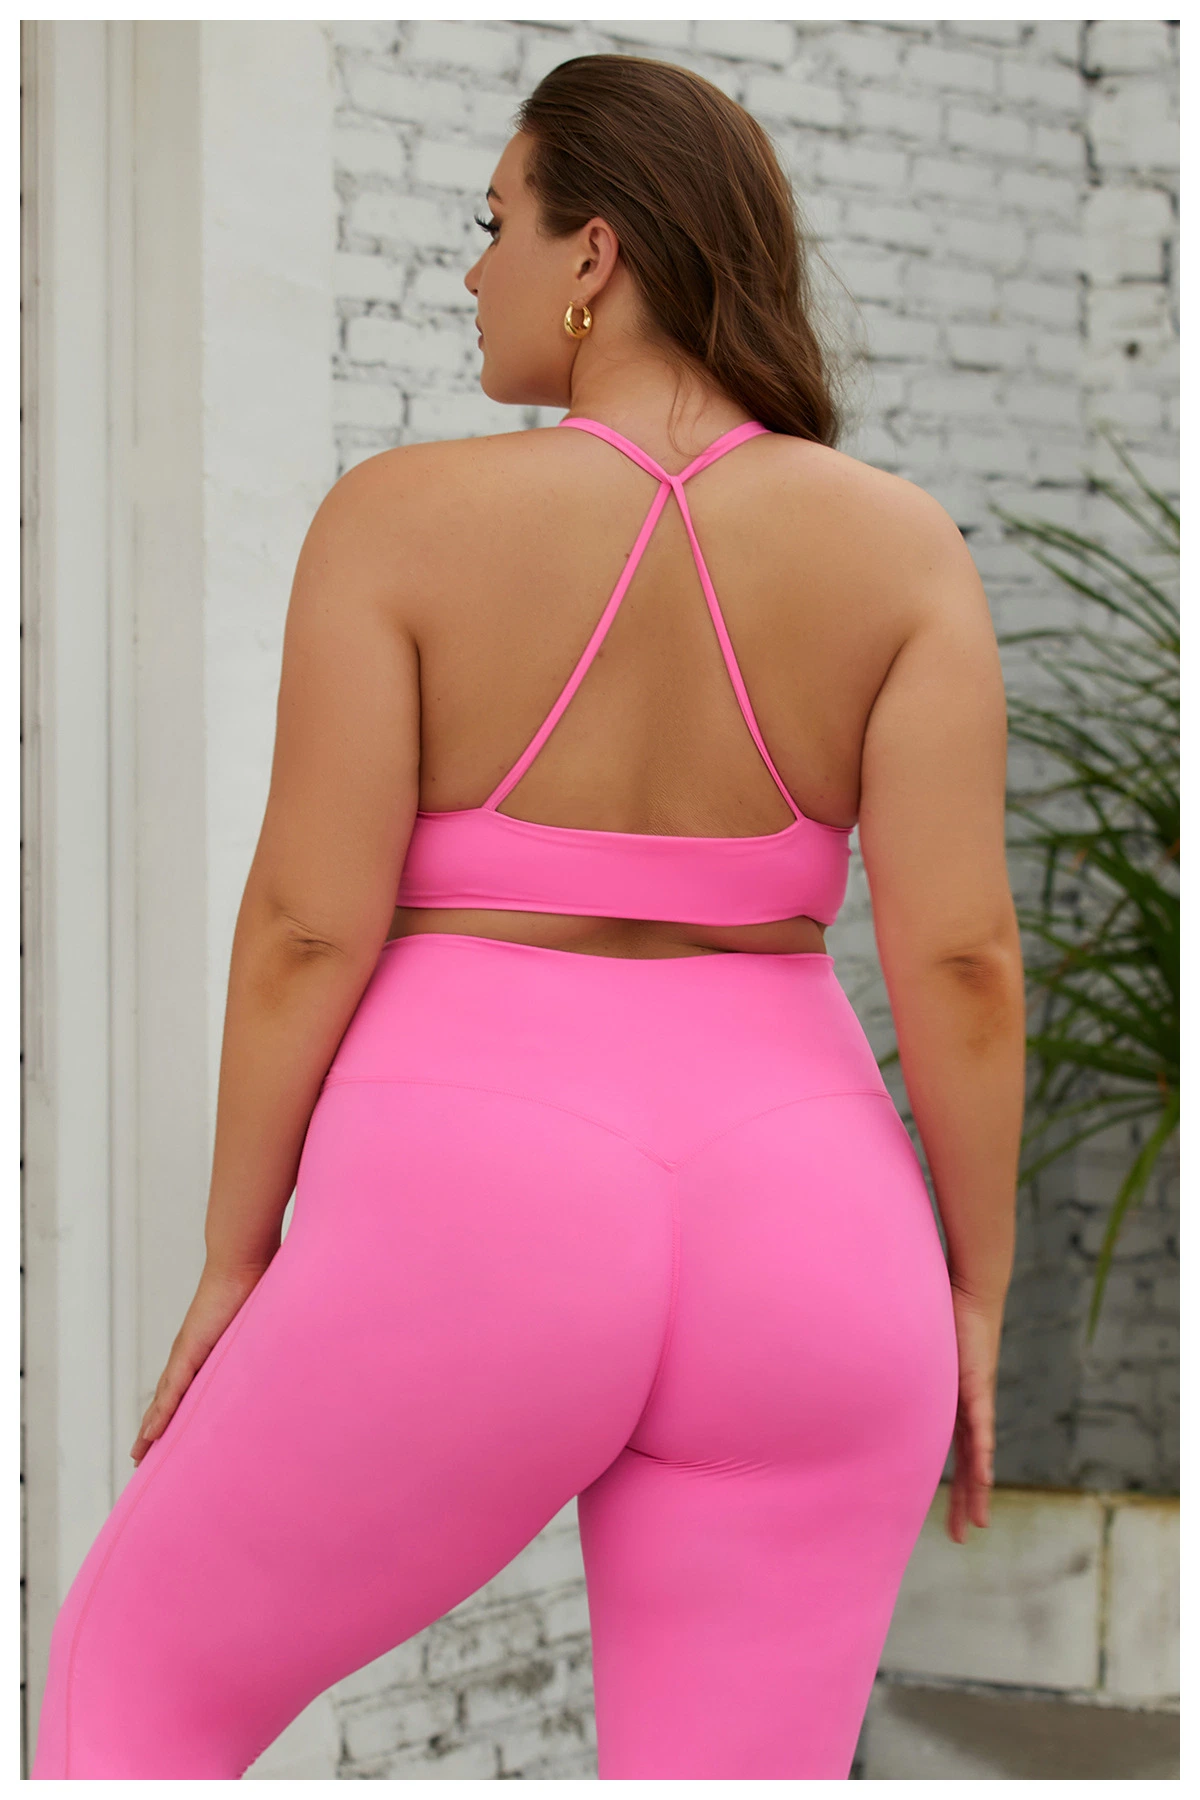 XL 3XL Plus Size Gym Clothing Yoga Wear Sports Bra Set Breathable Sportswear for Women 2 Pieces Workout Pants Set